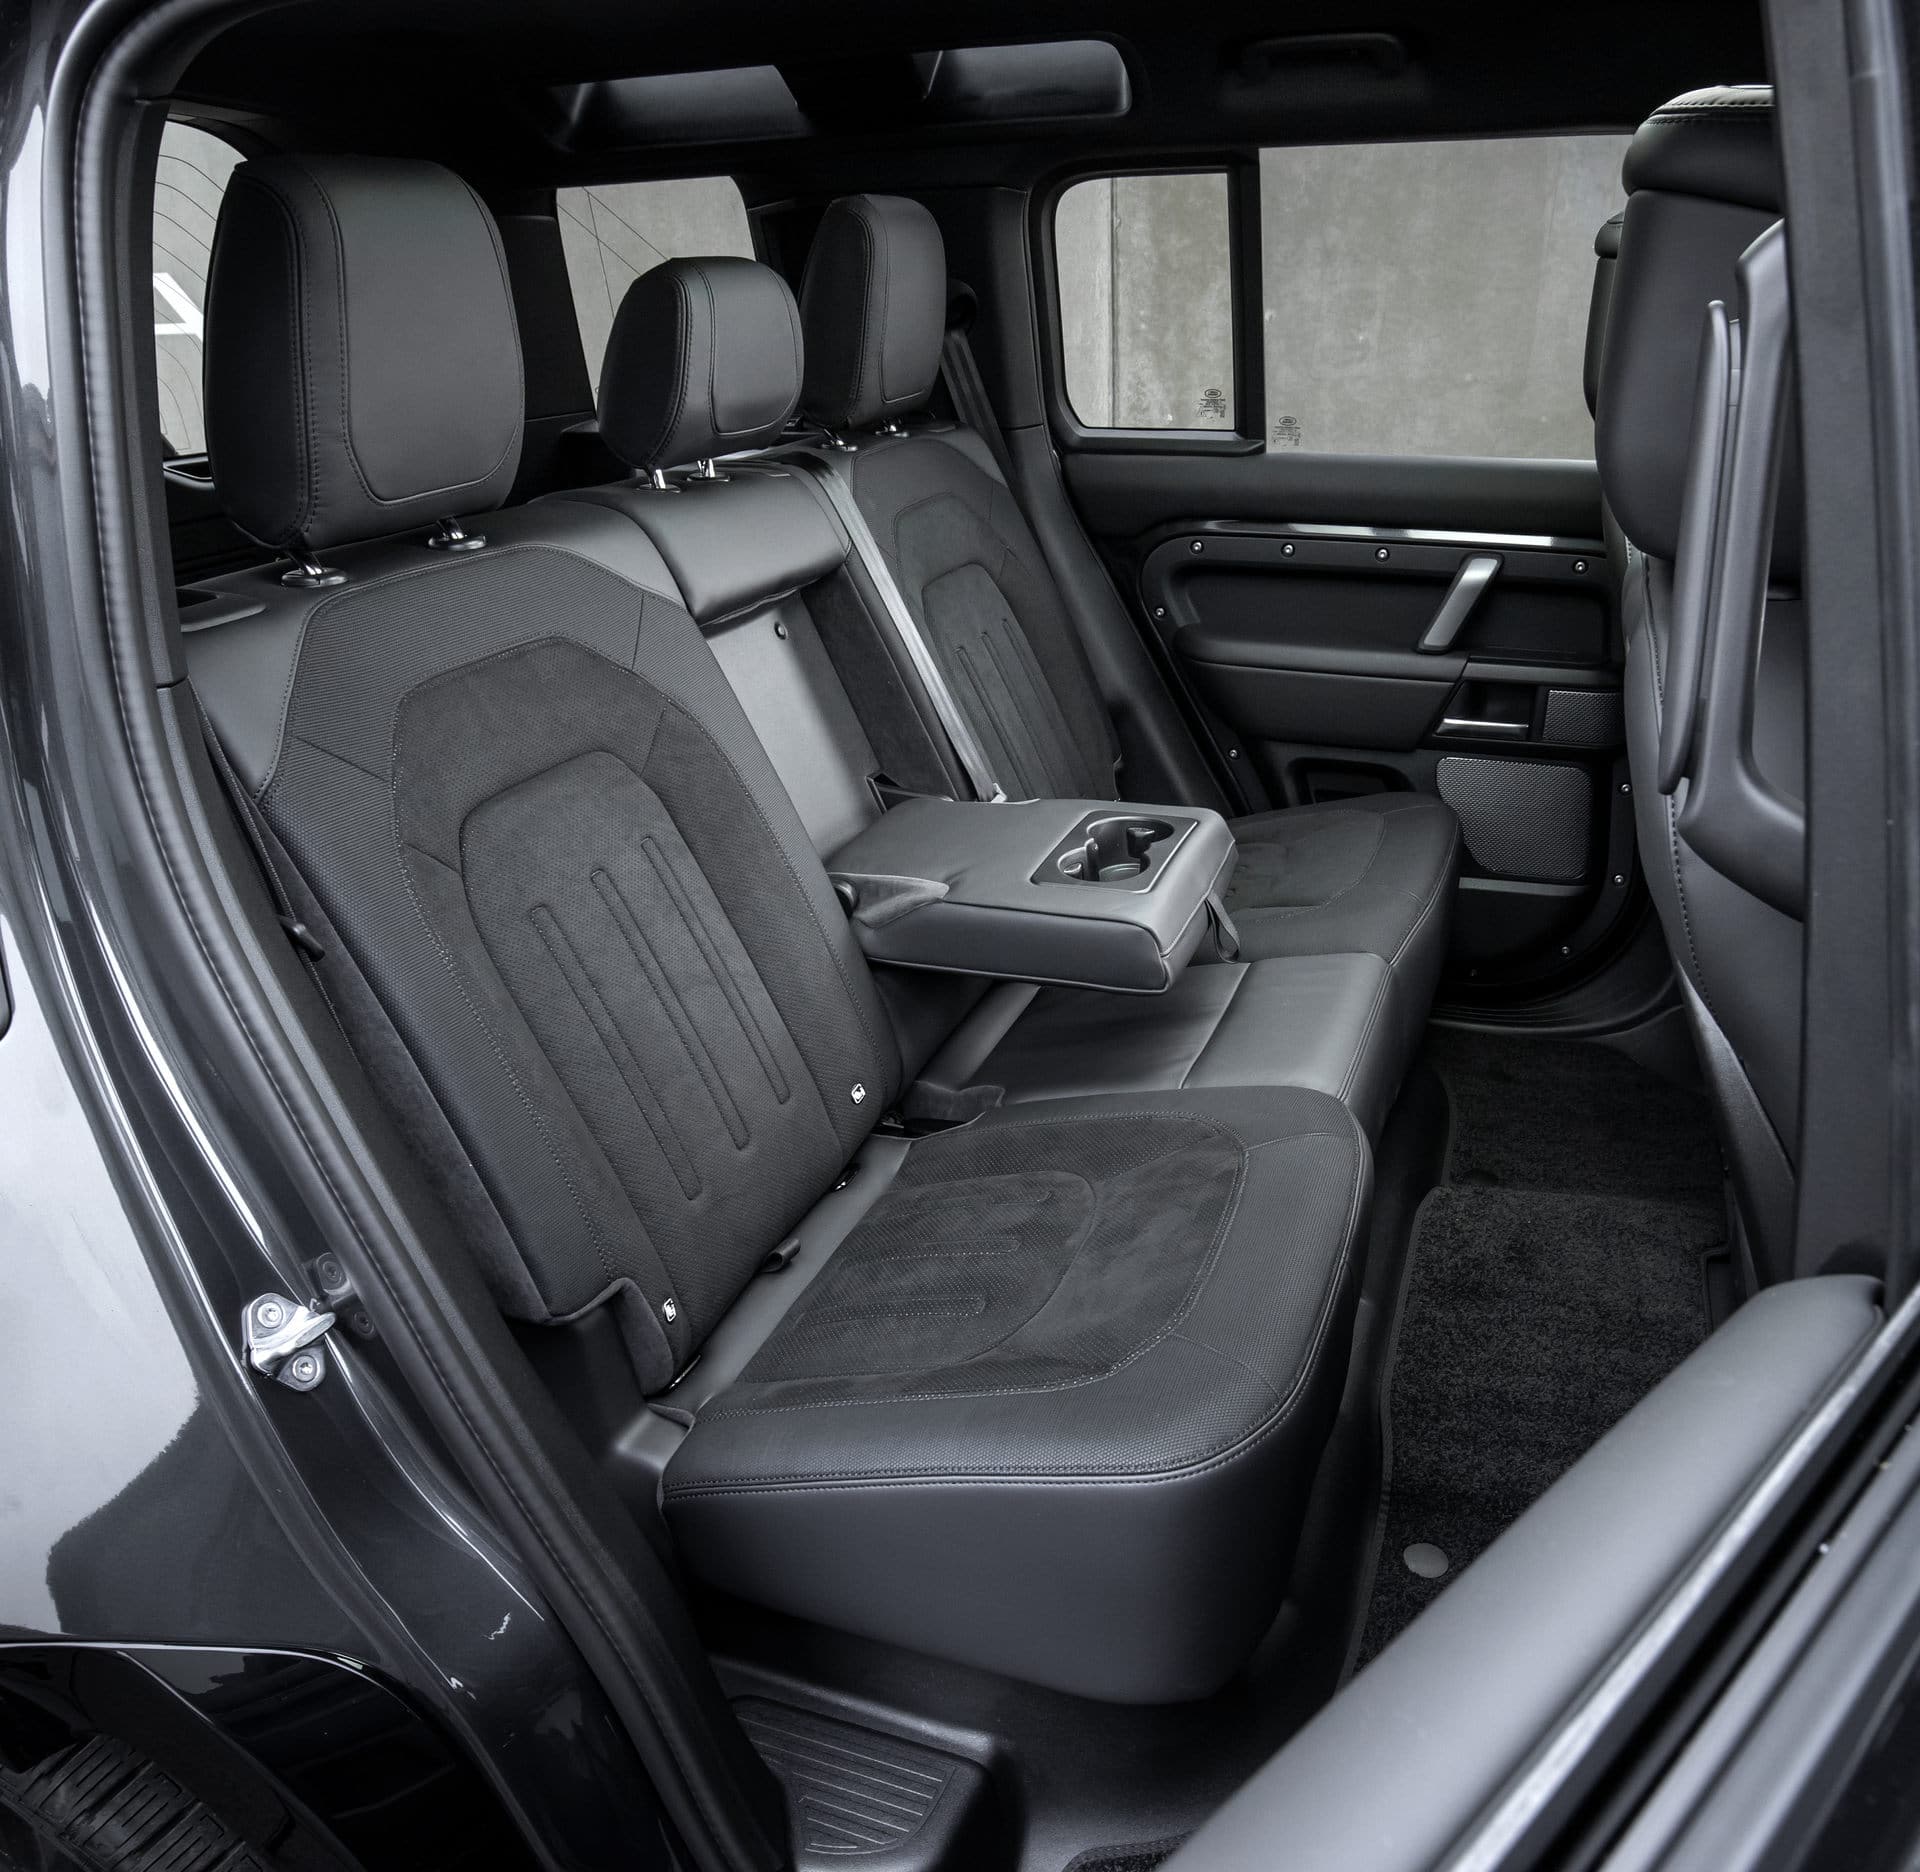 Land Rover Defender V8 2022 trình làng, trang bị động cơ siêu nạp 5.0L, công suất tối đa 518 mã lực